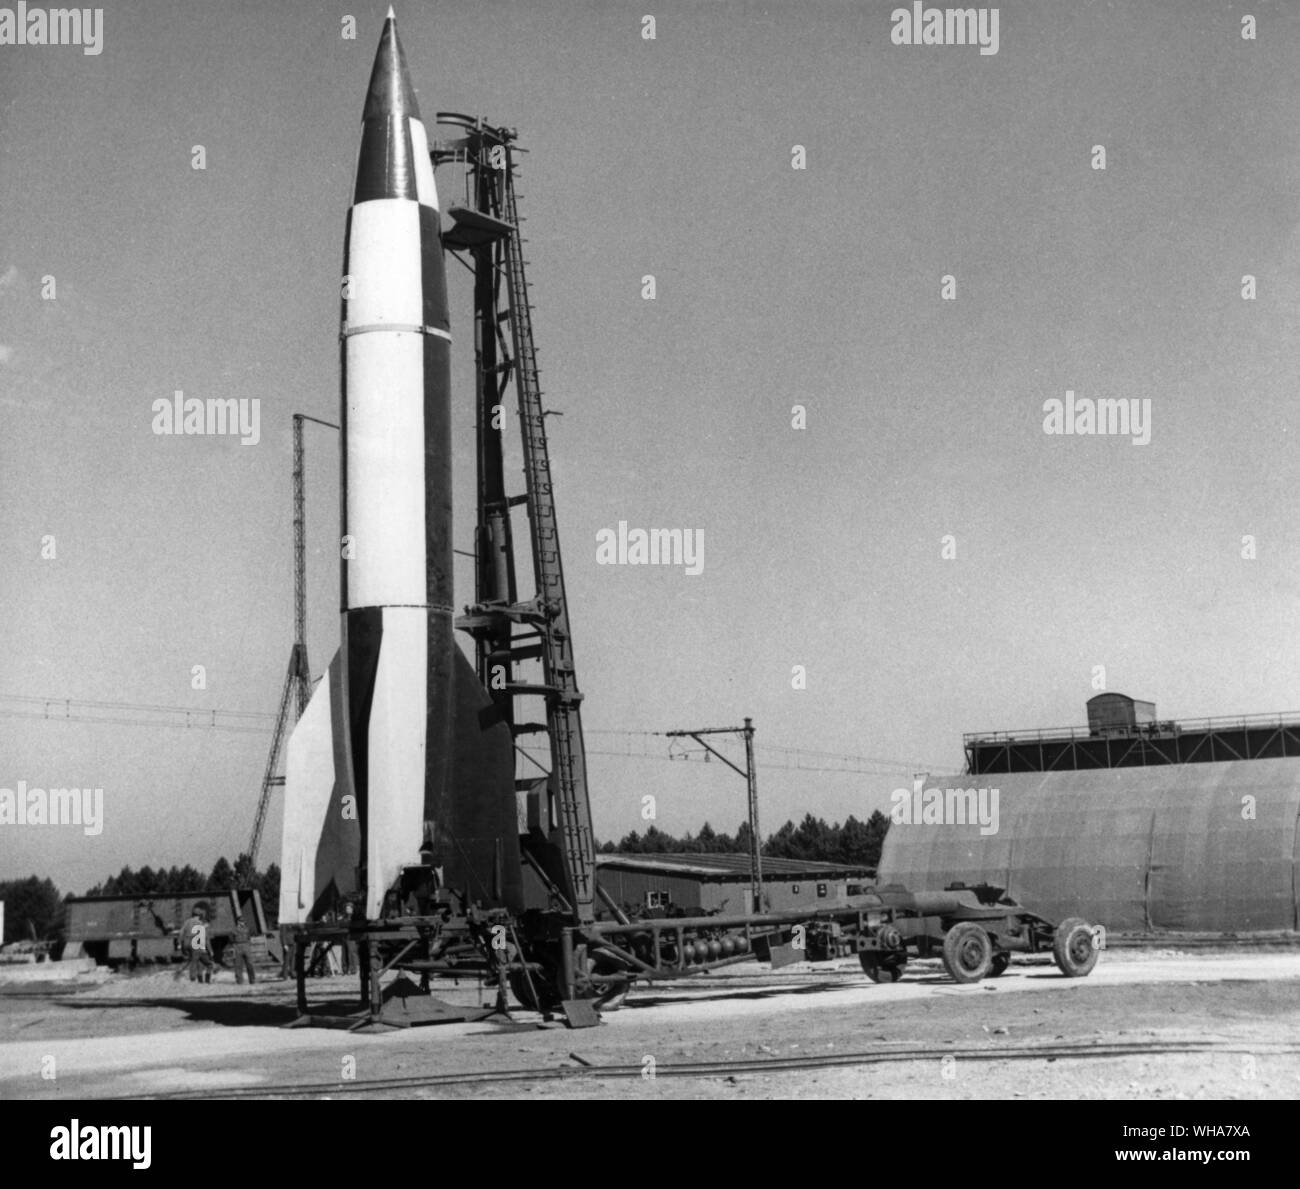 V2 rocket de l'équipement, vue générale de la fusée sur la table de tir, Meiler Wagon avec des plateformes en position de travail. 11 Septembre 1945 Banque D'Images